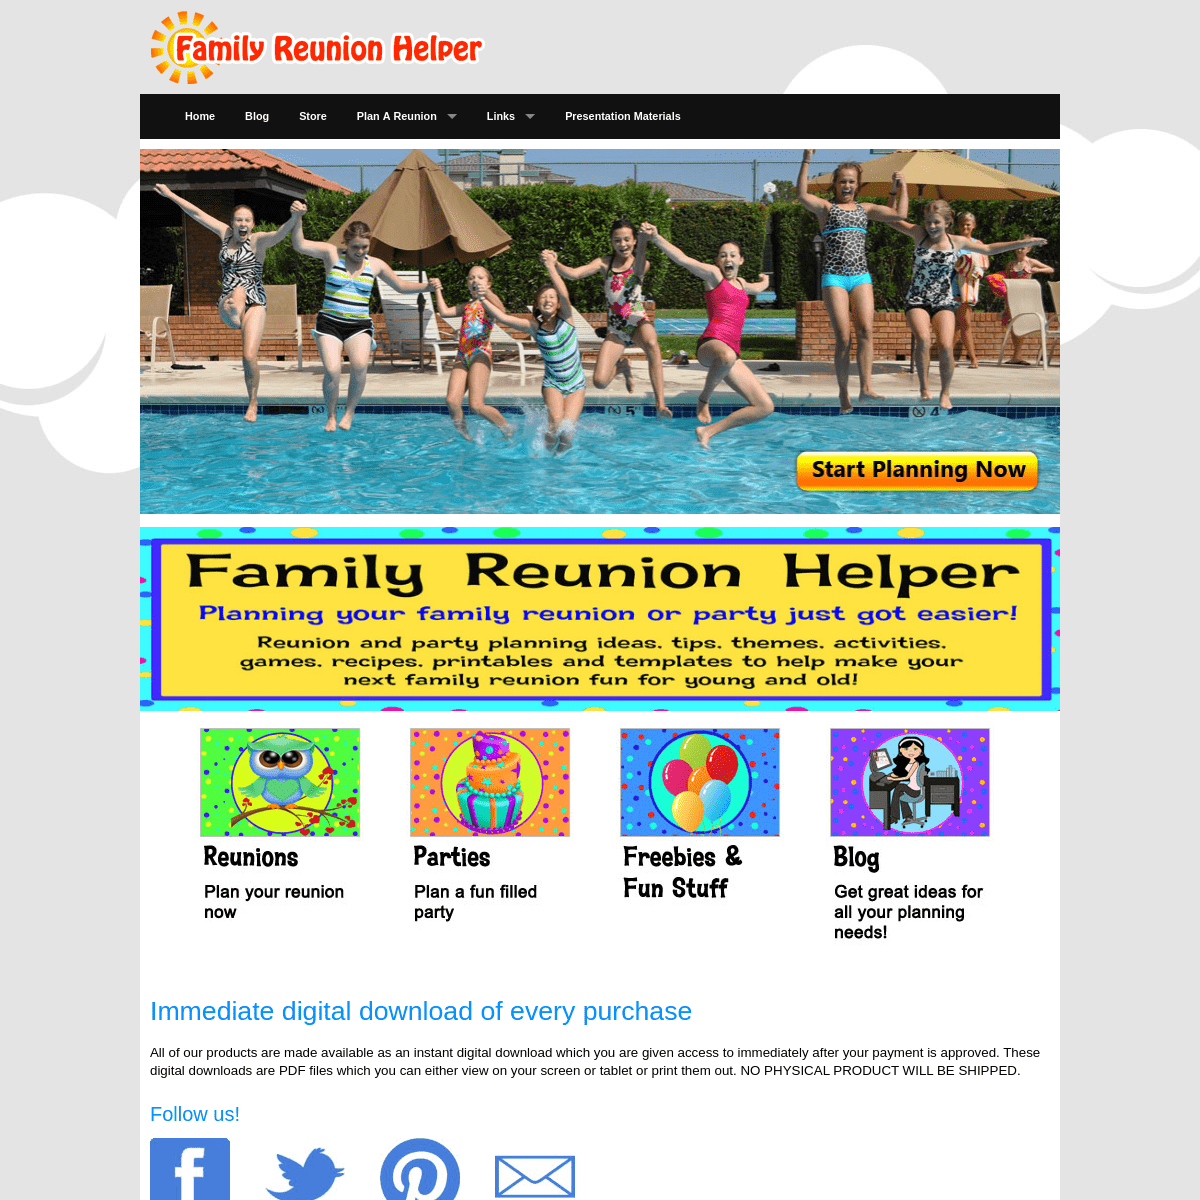 A complete backup of familyreunionhelper.com